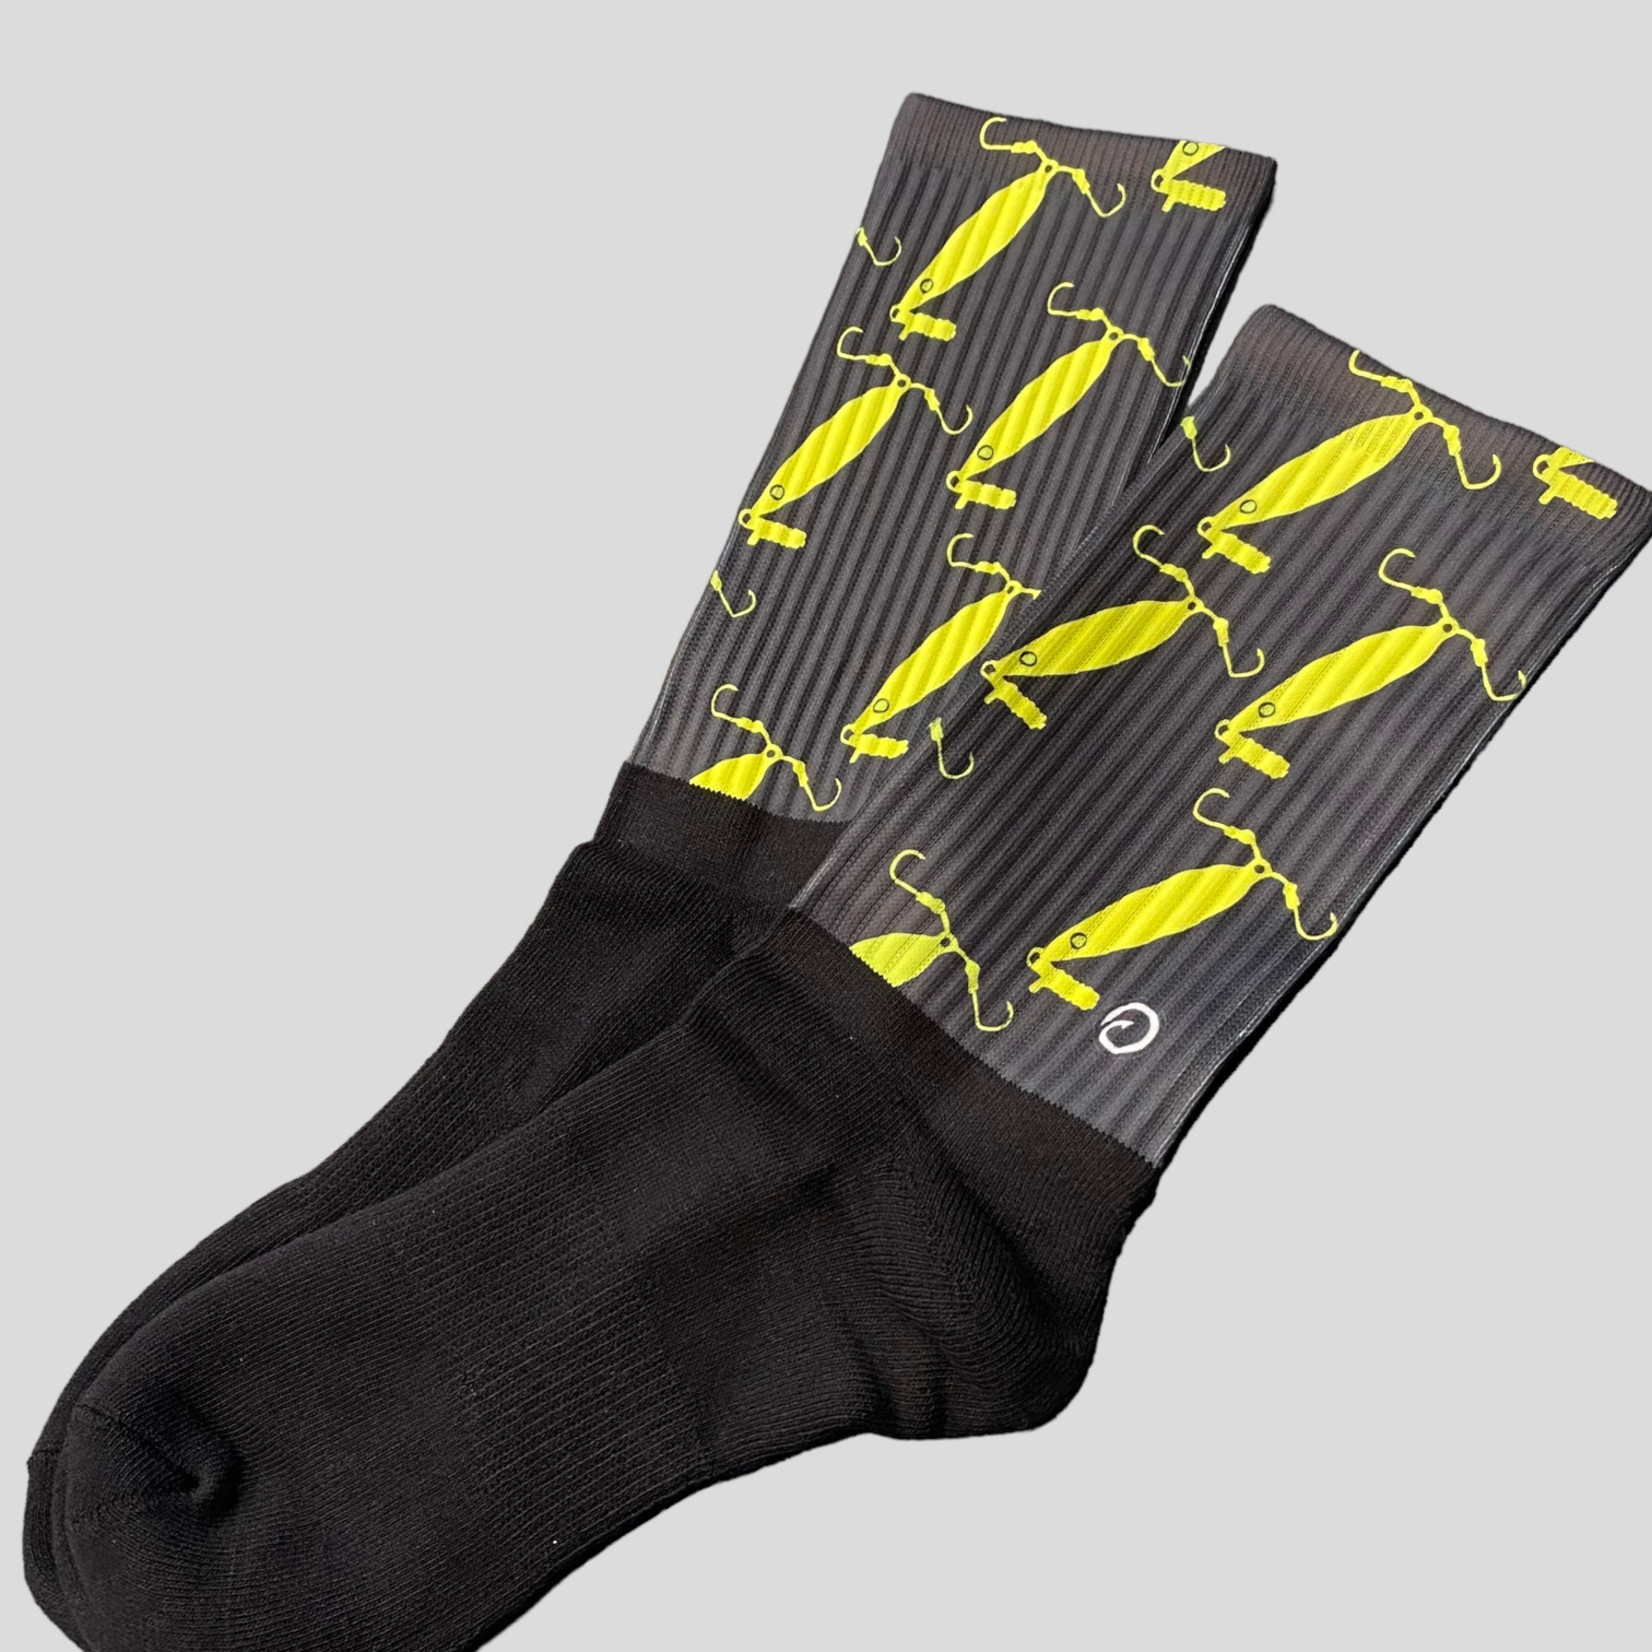 Fish Sox Tyalure / Fish Sox Socks